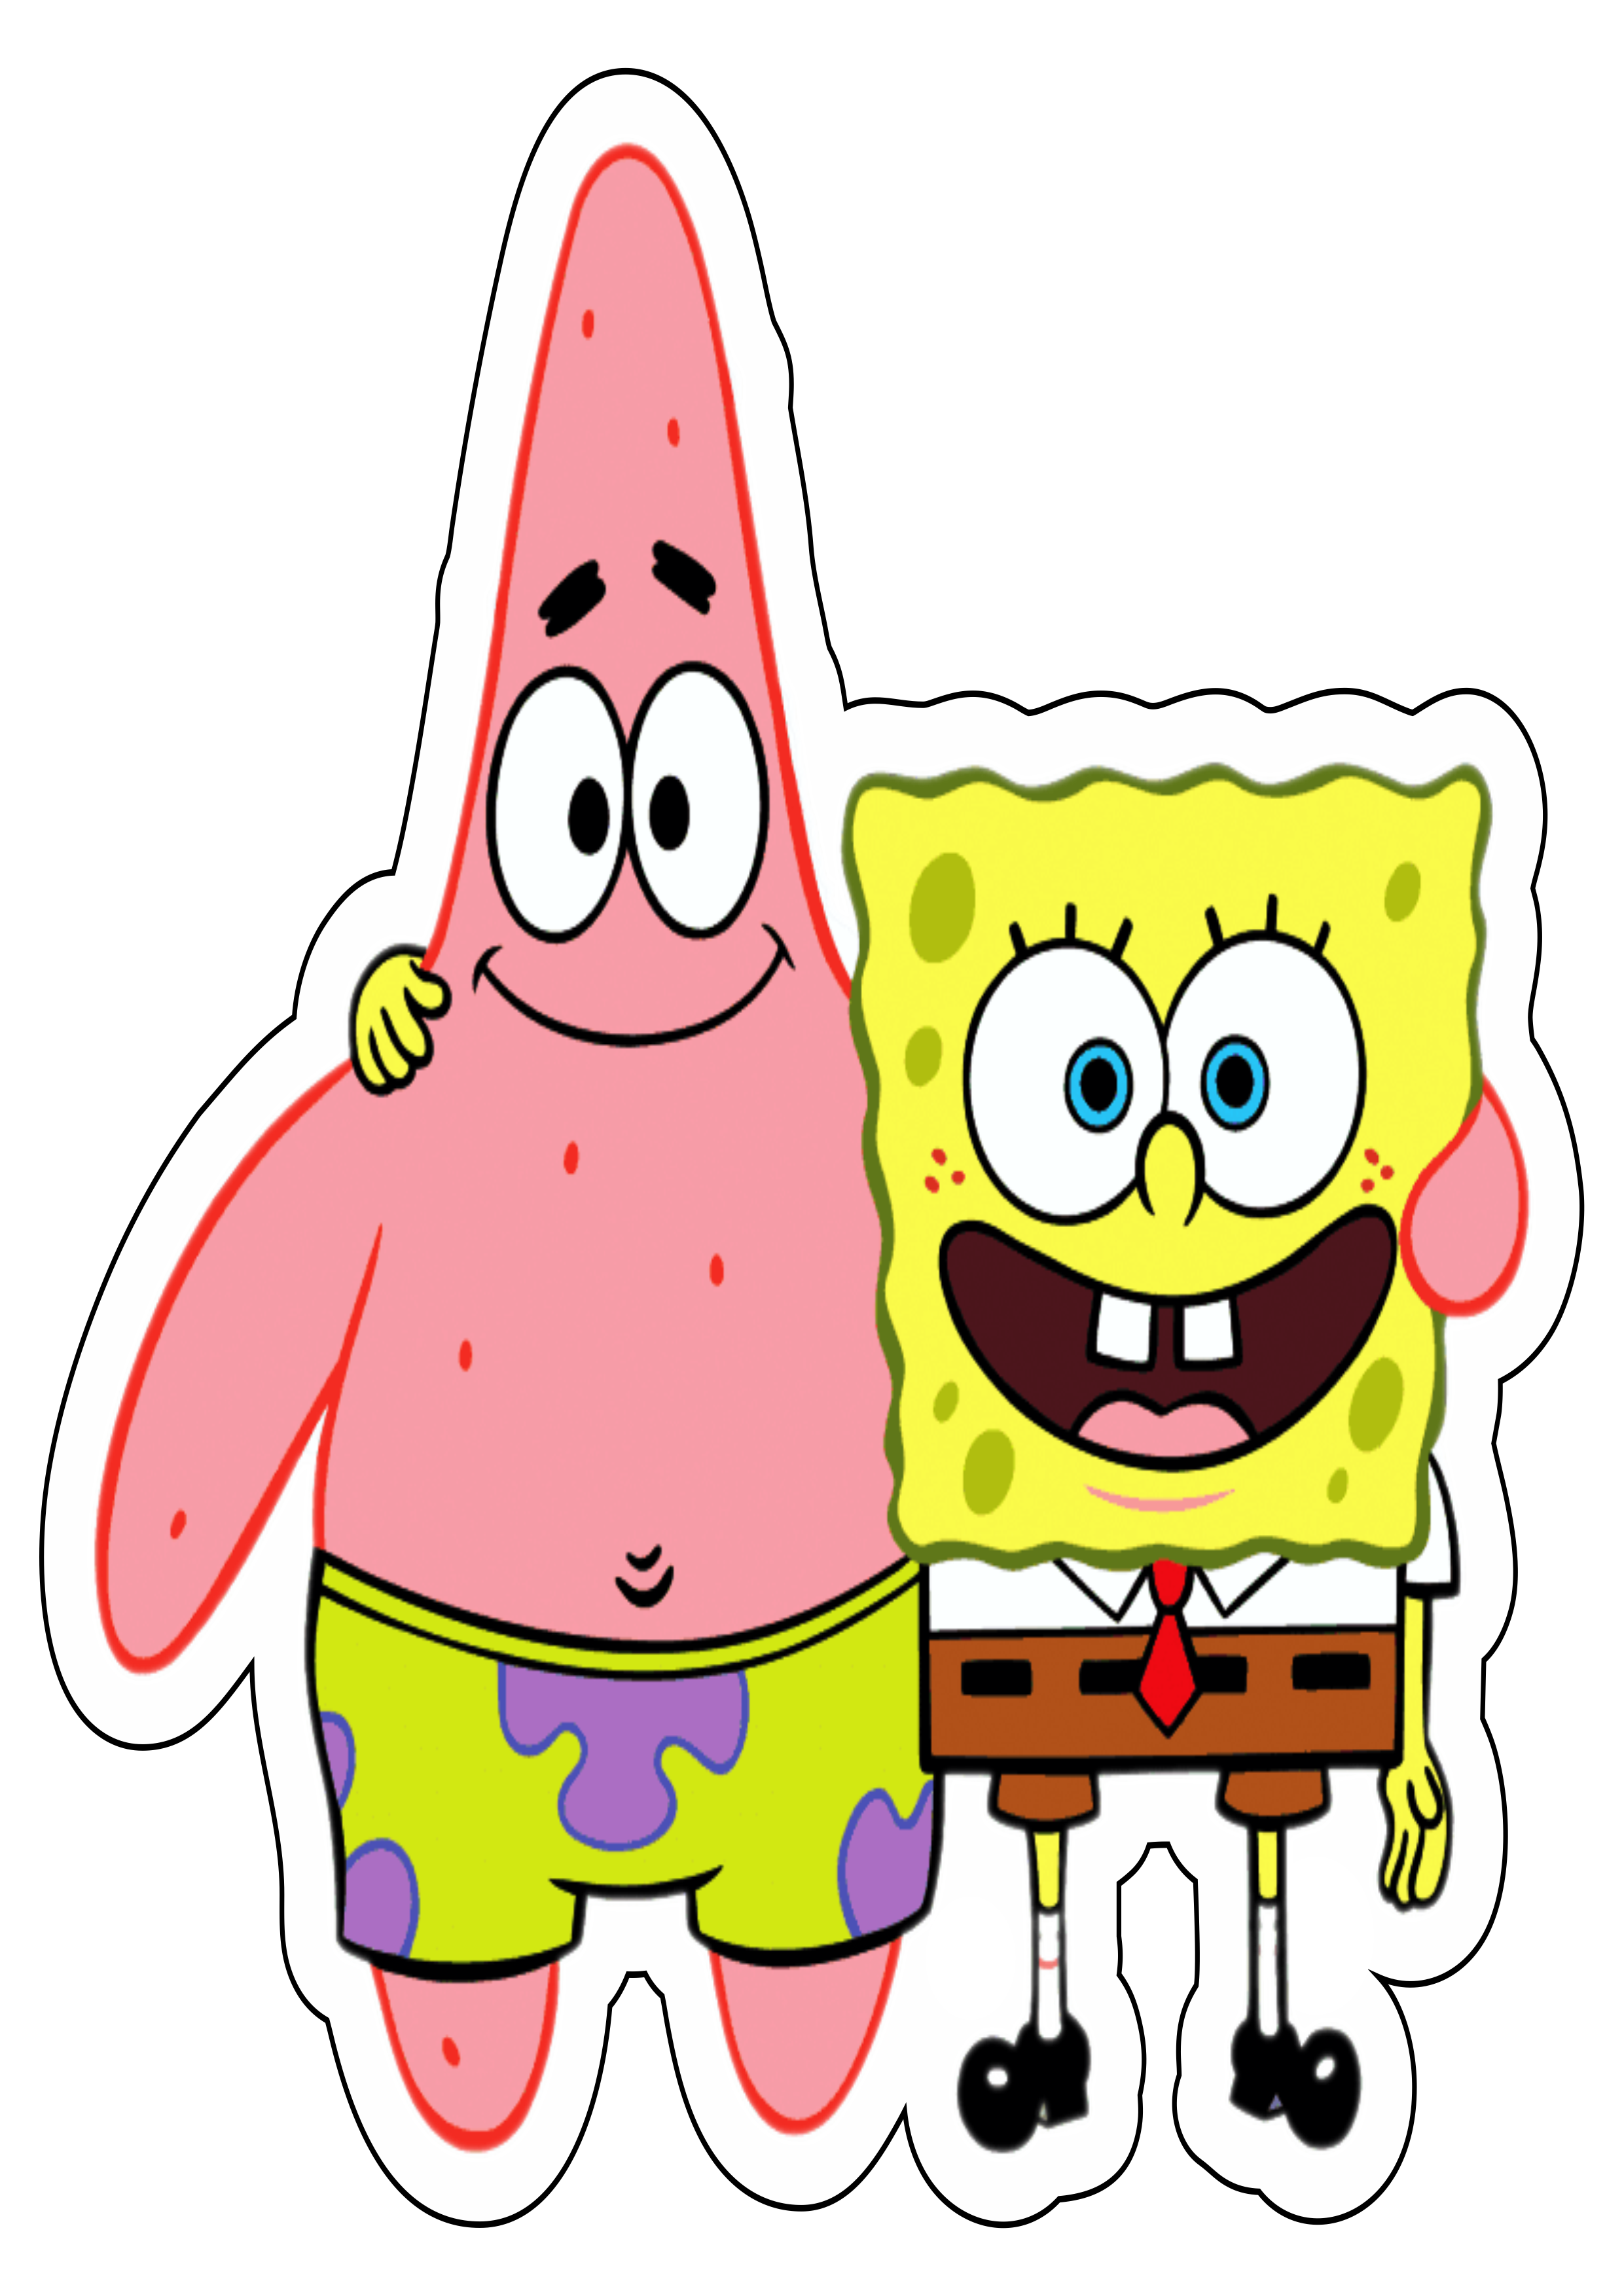 Bob esponja calça quadrada e Patrick estrela Spongebob Squarepants desenho animado infantil Nickelodeon png